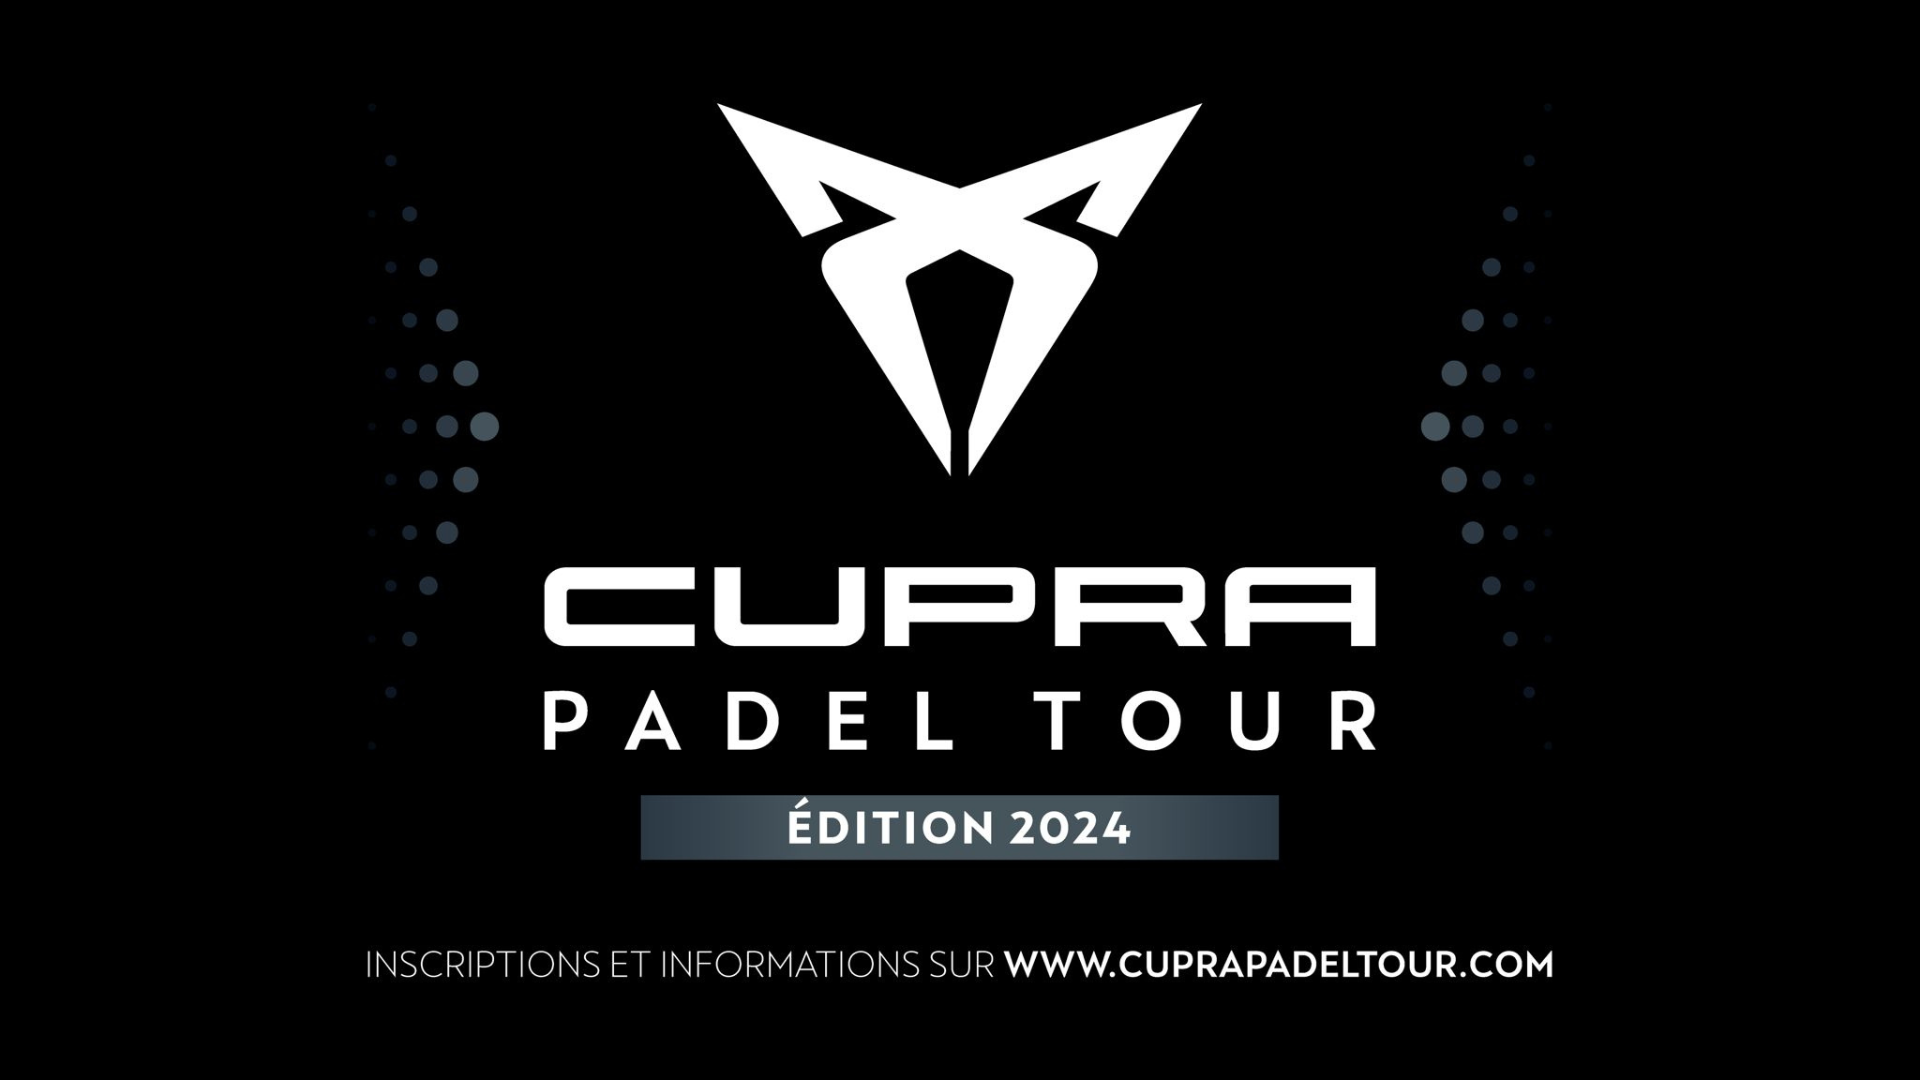 Launch of CUPRA PADEL 2024 TOUR